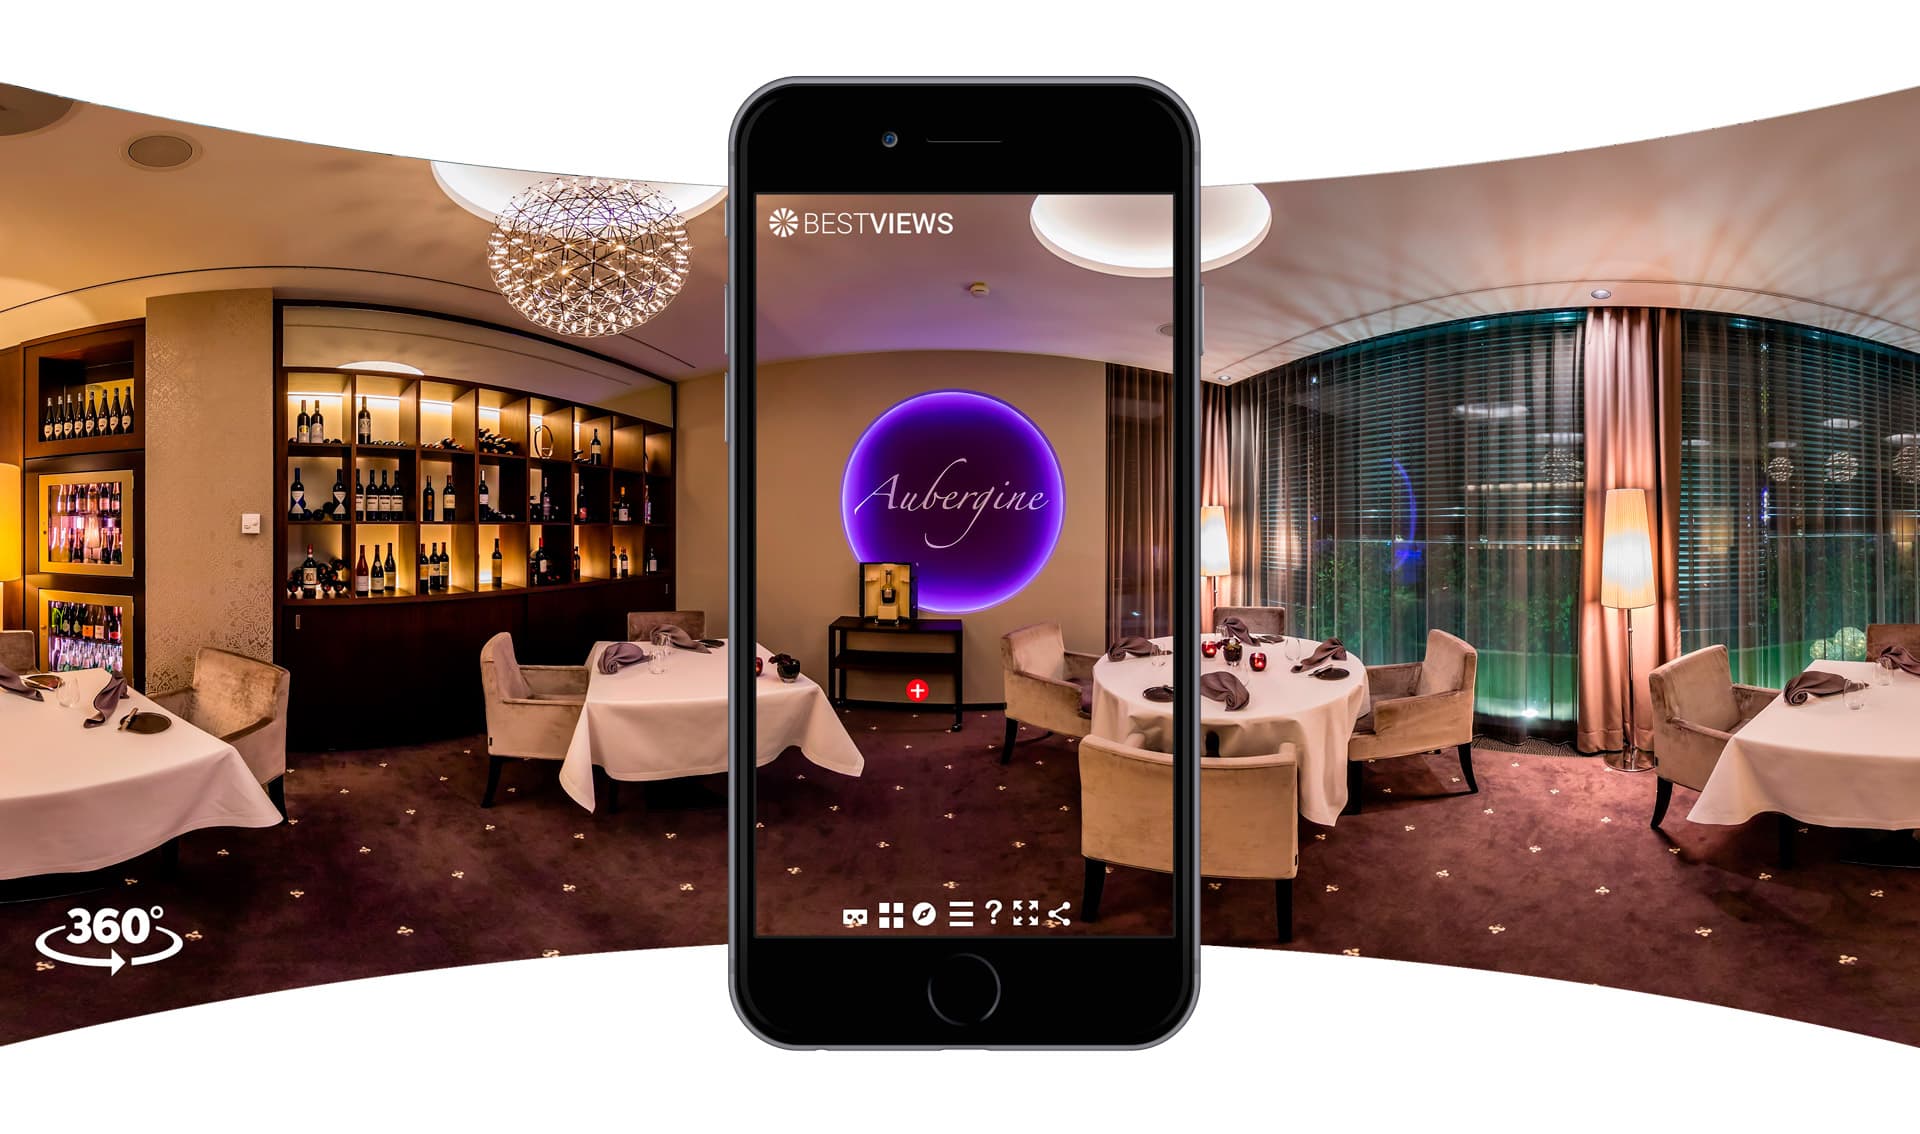 virtuell 360° Restaurant mit dem Smartphone erleben